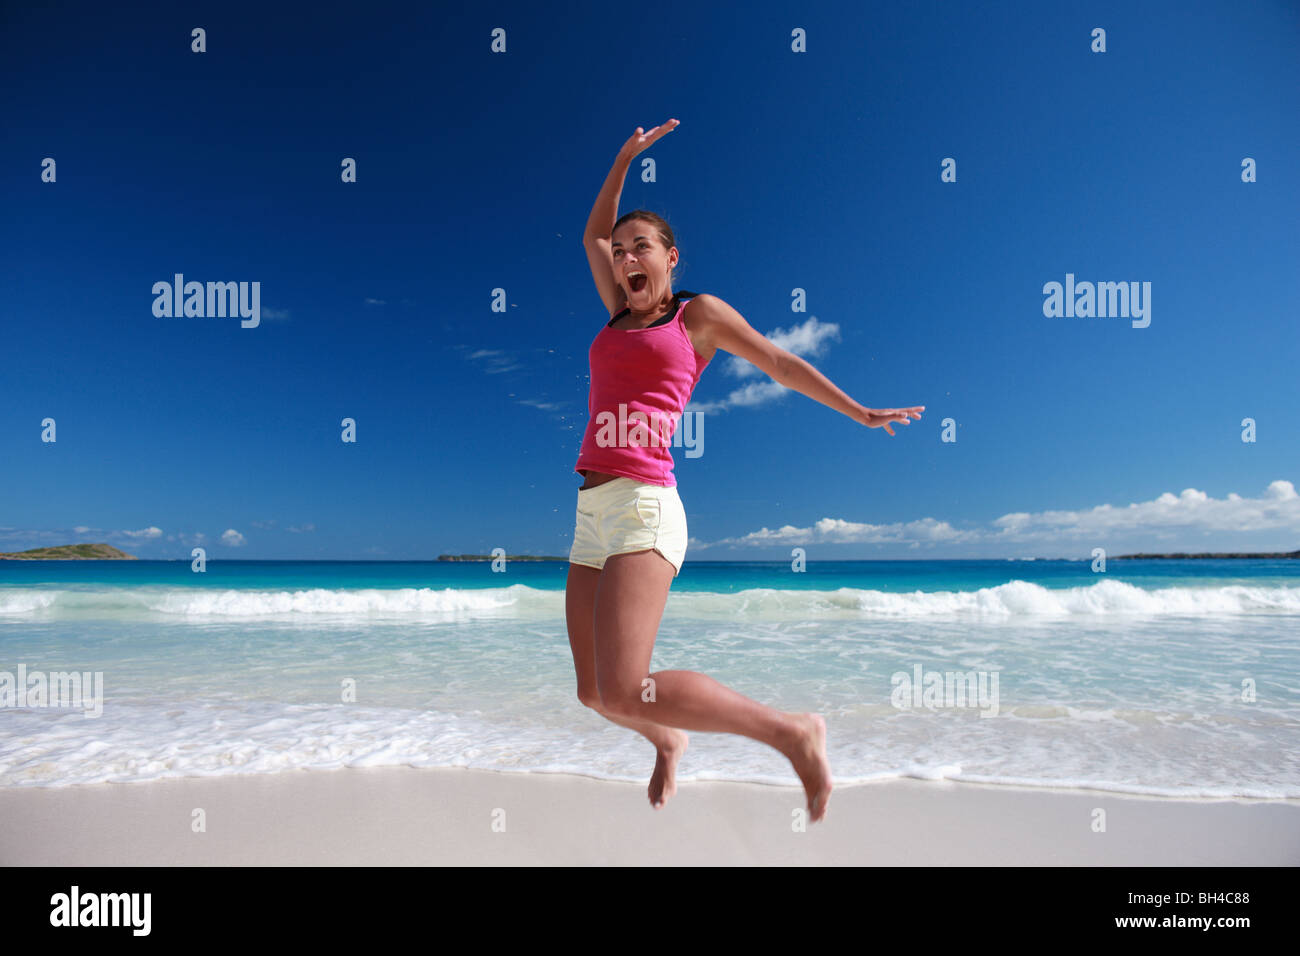 Junge Frau in die Luft springen, auf einem einsamen tropischen Strand lächelnd Stockfoto